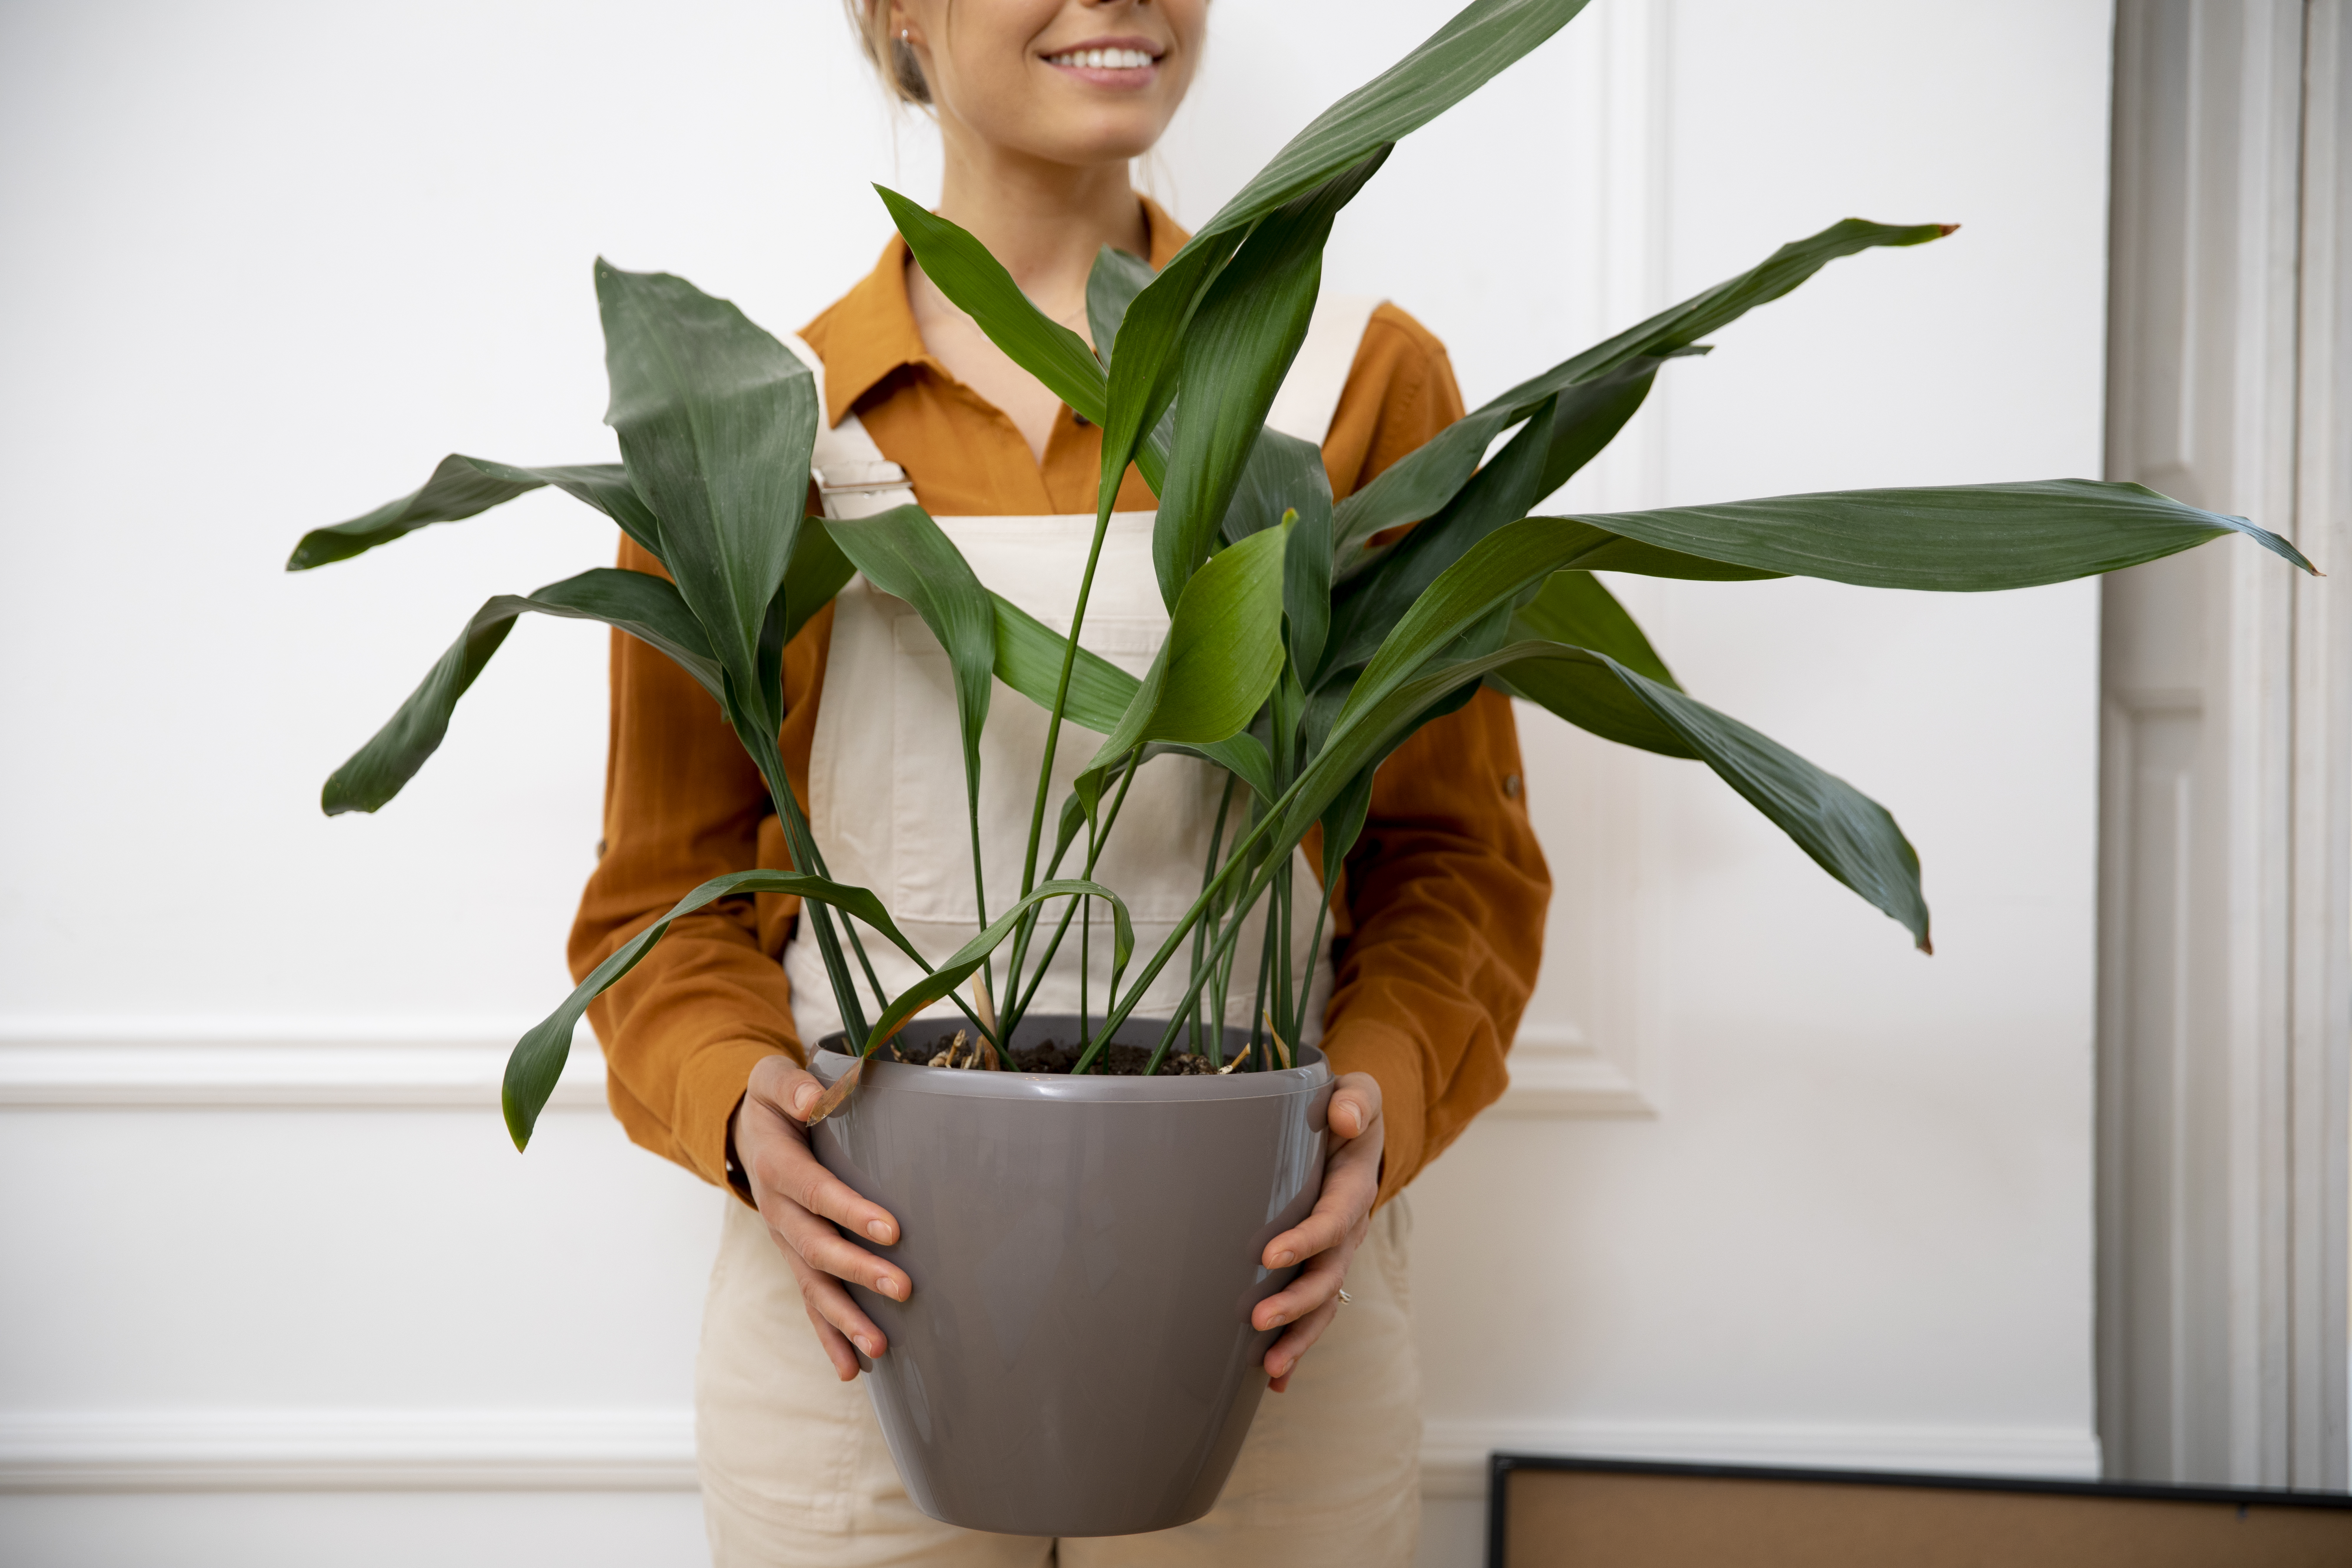 Implementa el verde en casa con las plantas de interiores.